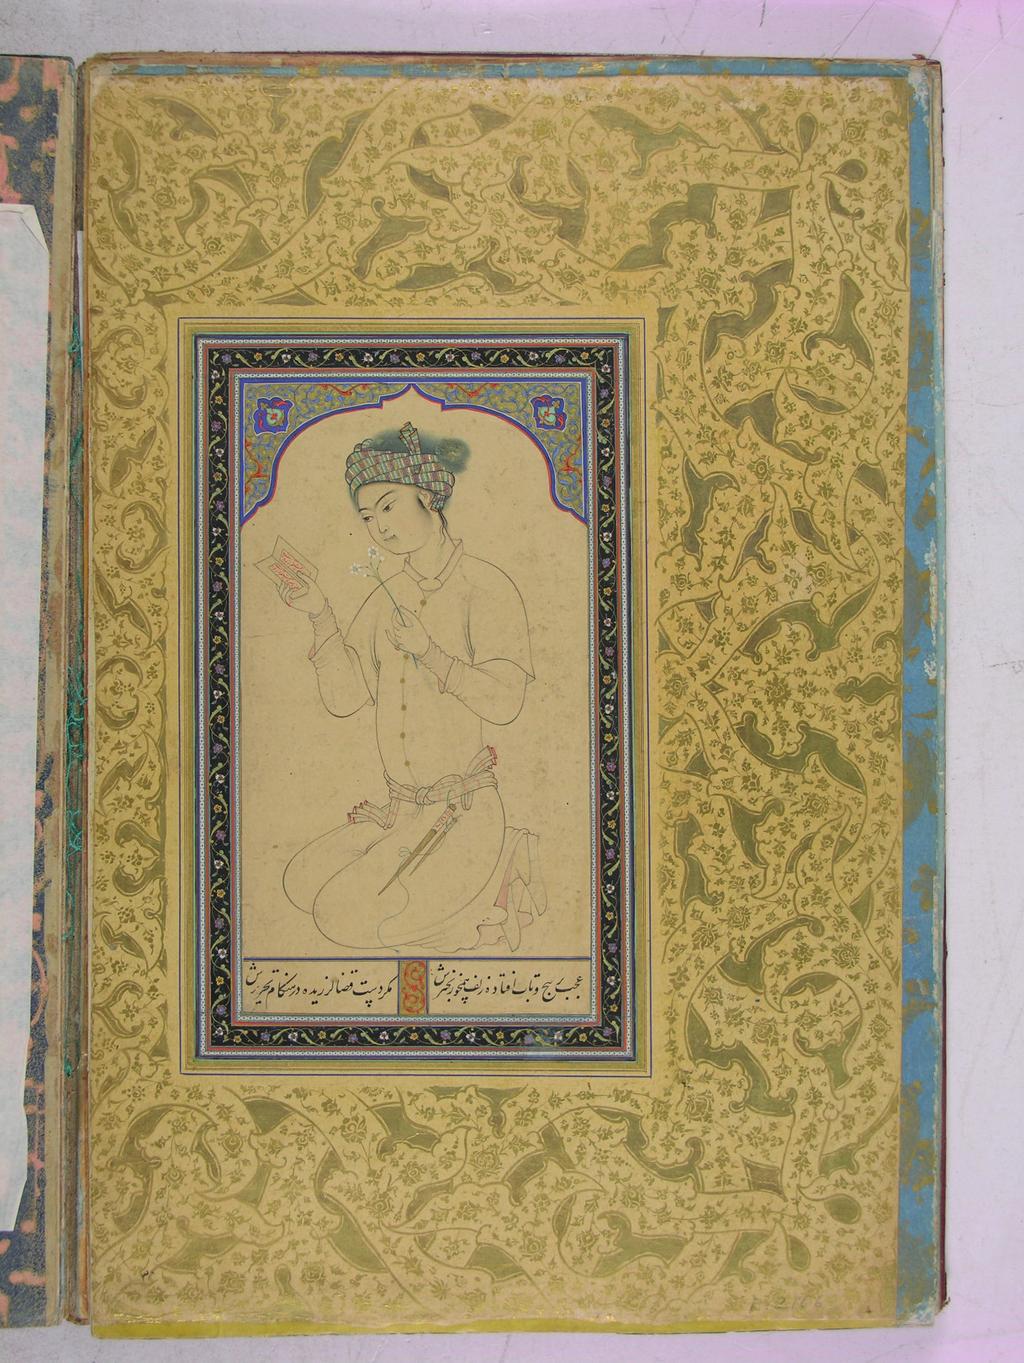 234 Zeren Tanındı F. 17. Şeyh Muhammed imzalı erkek portresi. 16.9 x 9.9 cm. Albüm. 1575 civ.